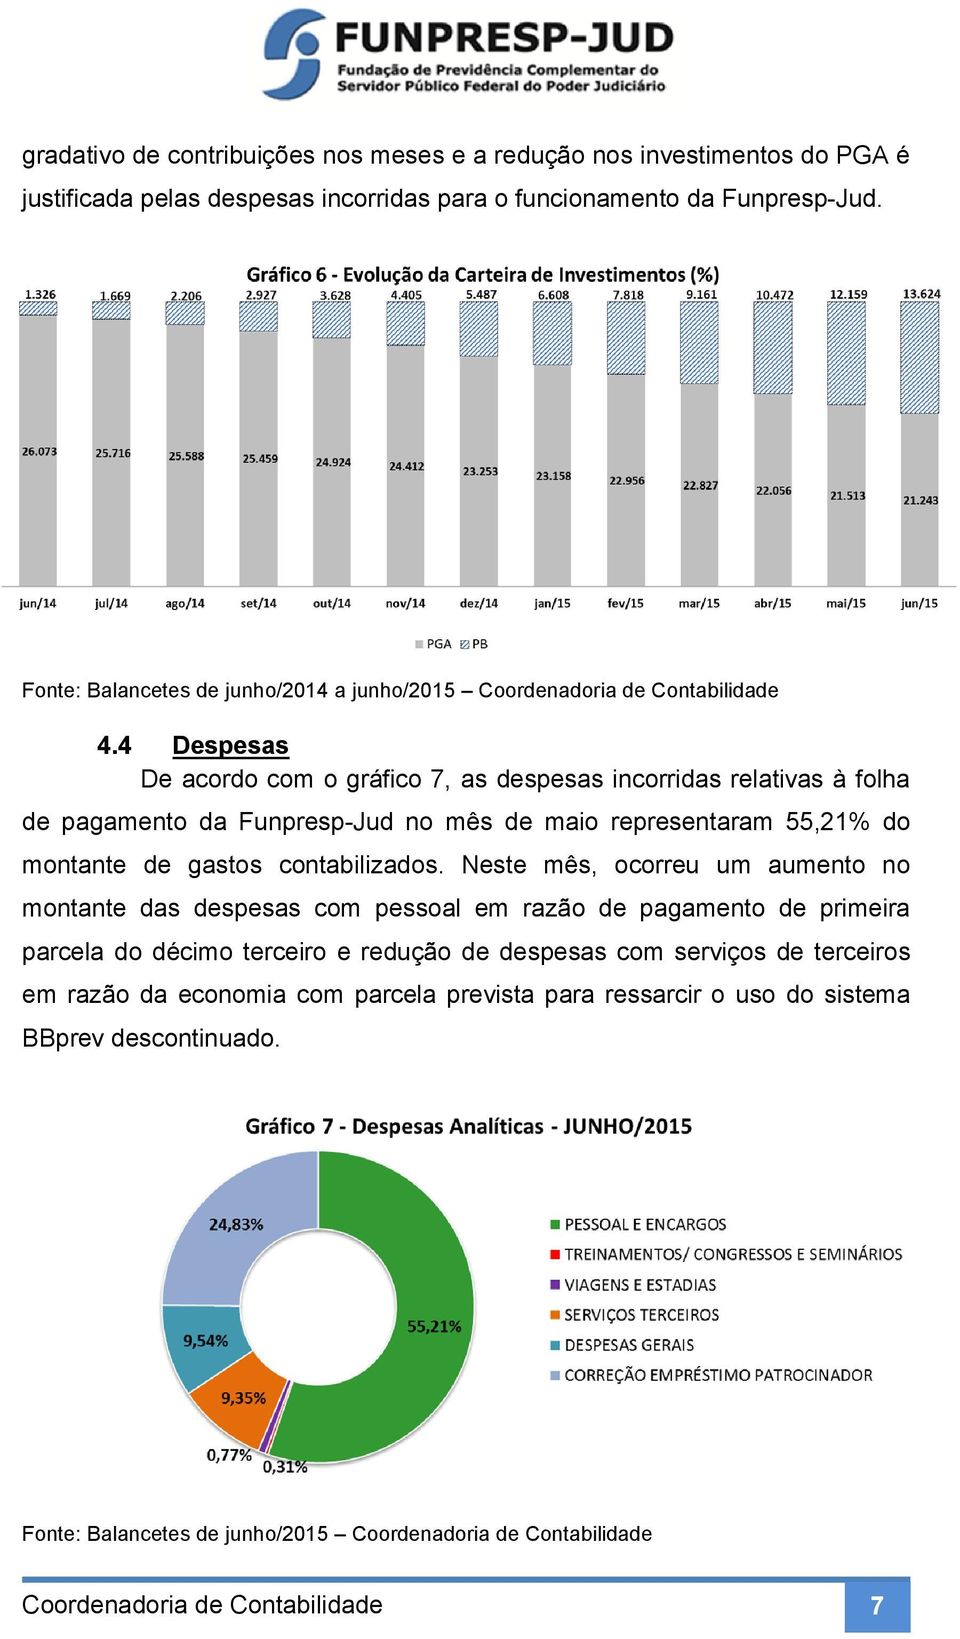 4 Despesas De acordo com o gráfico 7, as despesas incorridas relativas à folha de pagamento da Funpresp-Jud no mês de maio representaram 55,21% do montante de gastos contabilizados.